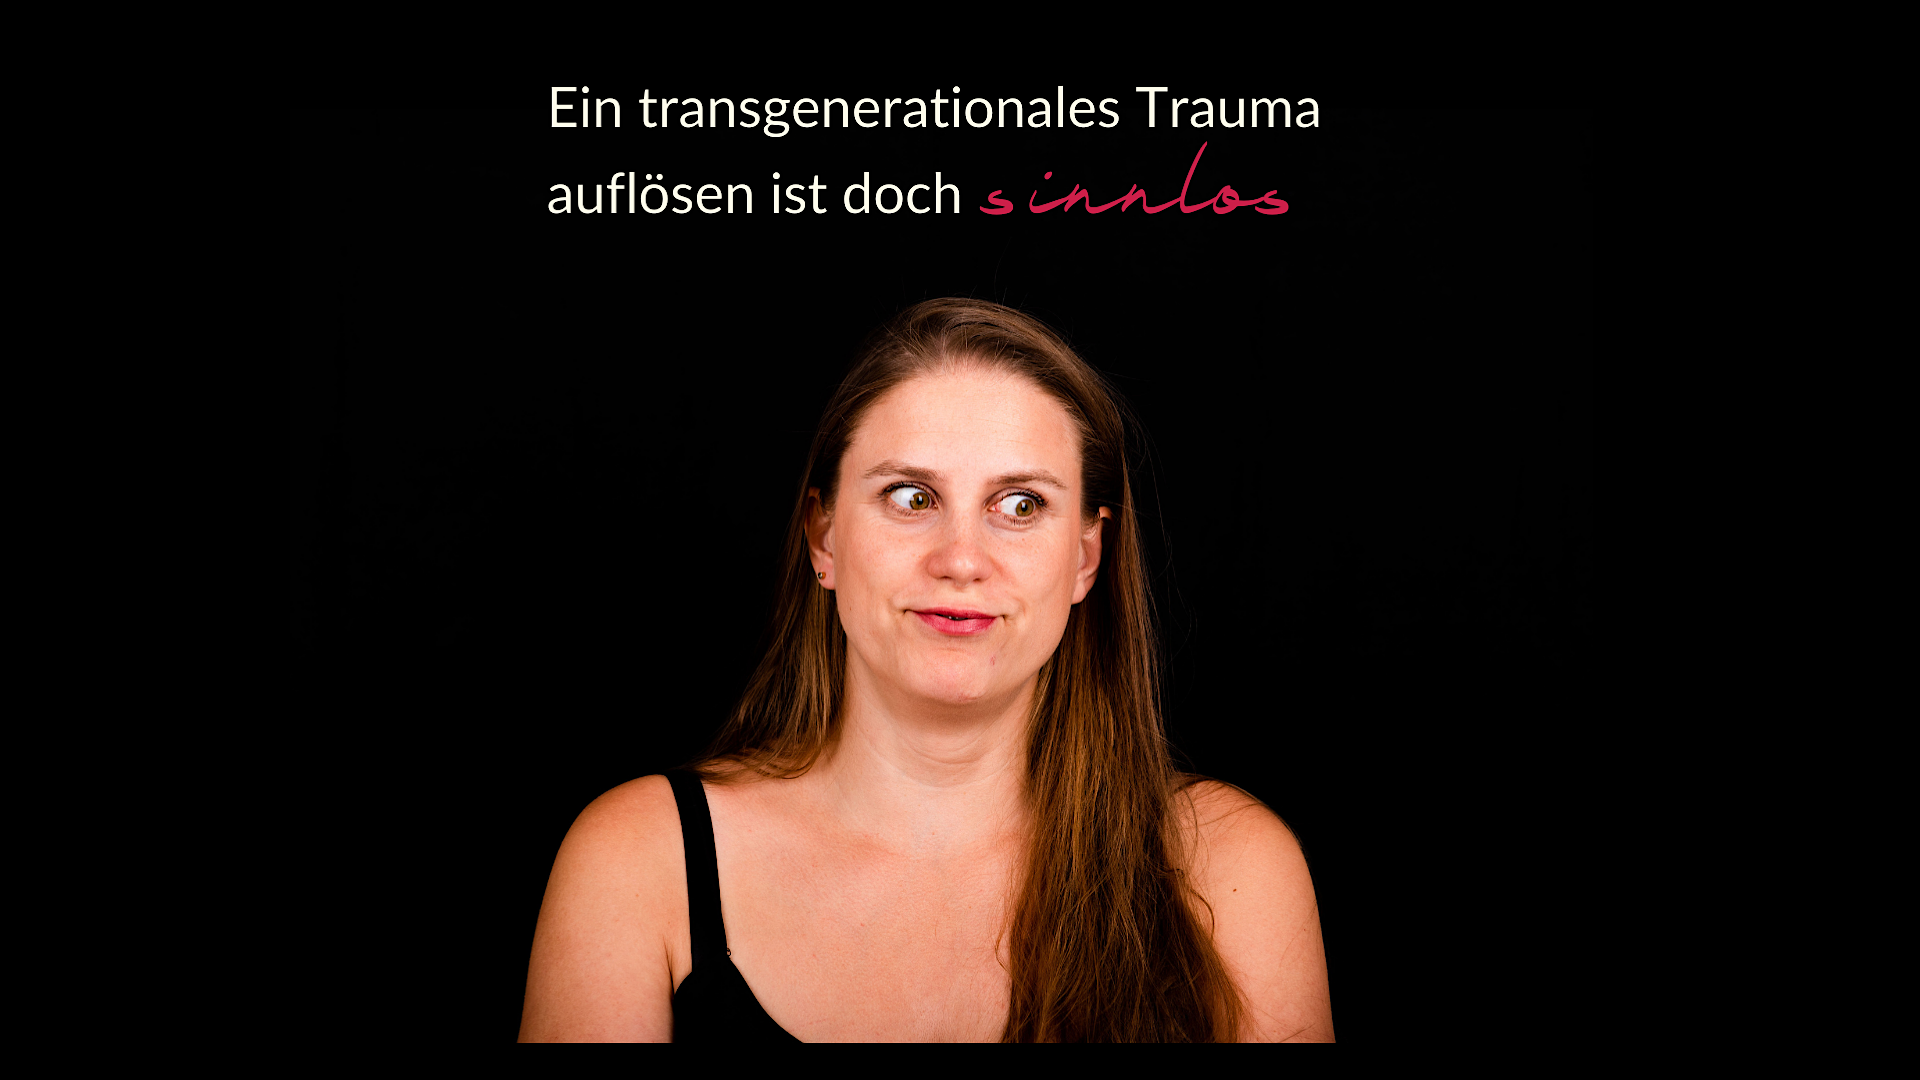 Bild von einer Frau, die genervt mit den Augen rollt. Dazu der Titel: Ein transgenerationales Trauma auflösen ist doch sinnlos.